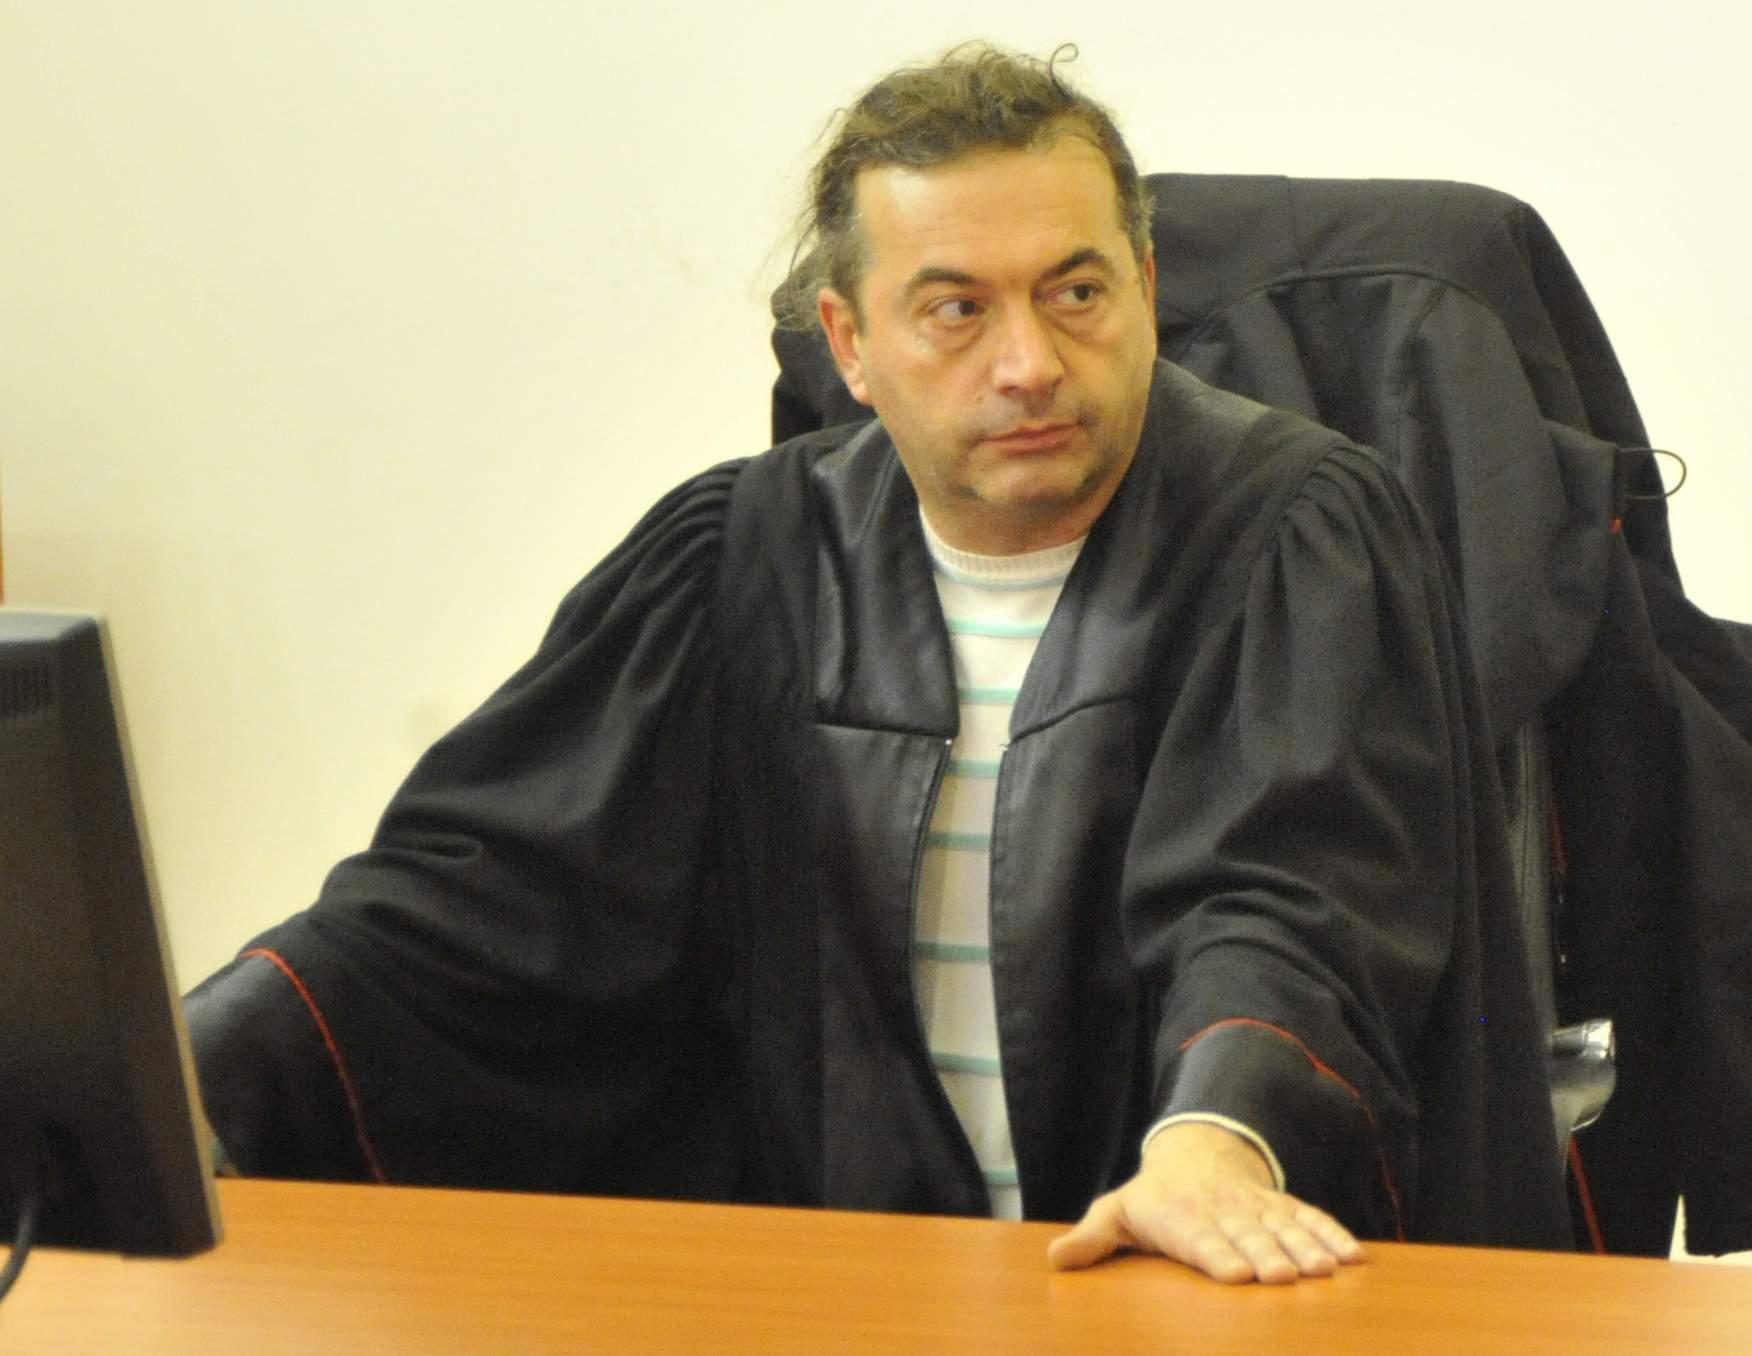 Mehmedbašić: Niko od njih ranije nije osuđivan, te su iz tog razloga svi pušteni na slobodu - Avaz